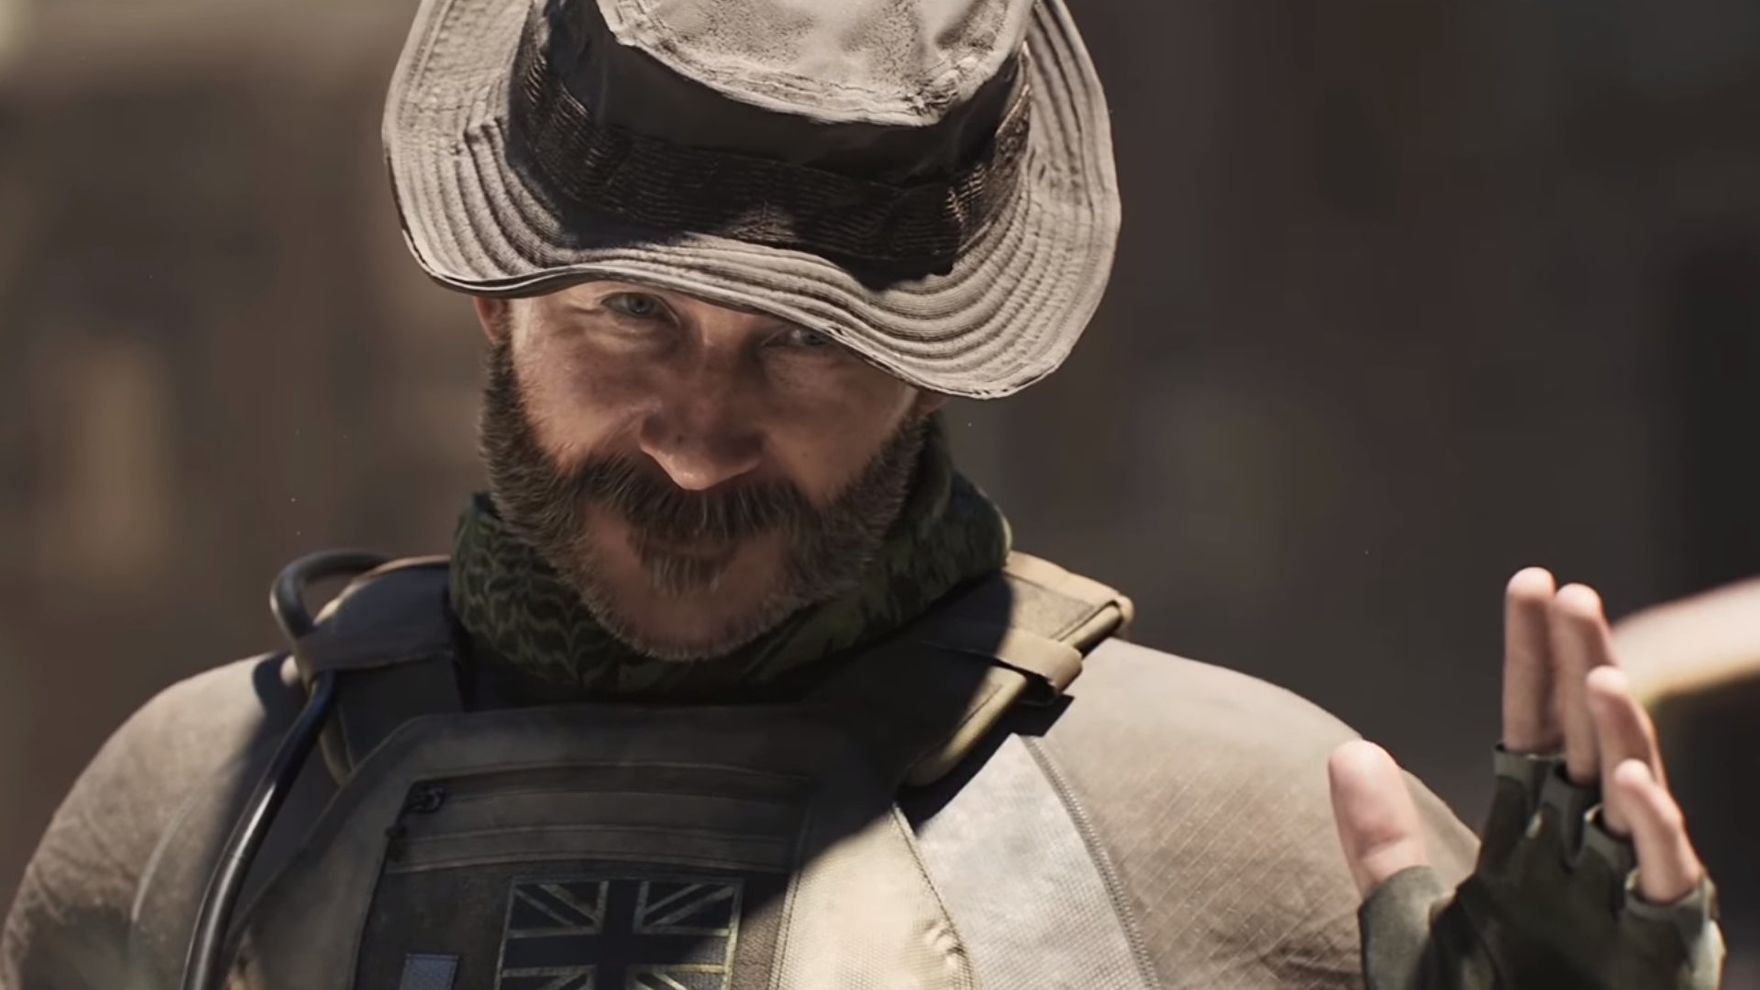 Imagens vazadas de Call Of Duty sugerem que o jogo de 2024 pode ser ambientado na Guerra do Golfo